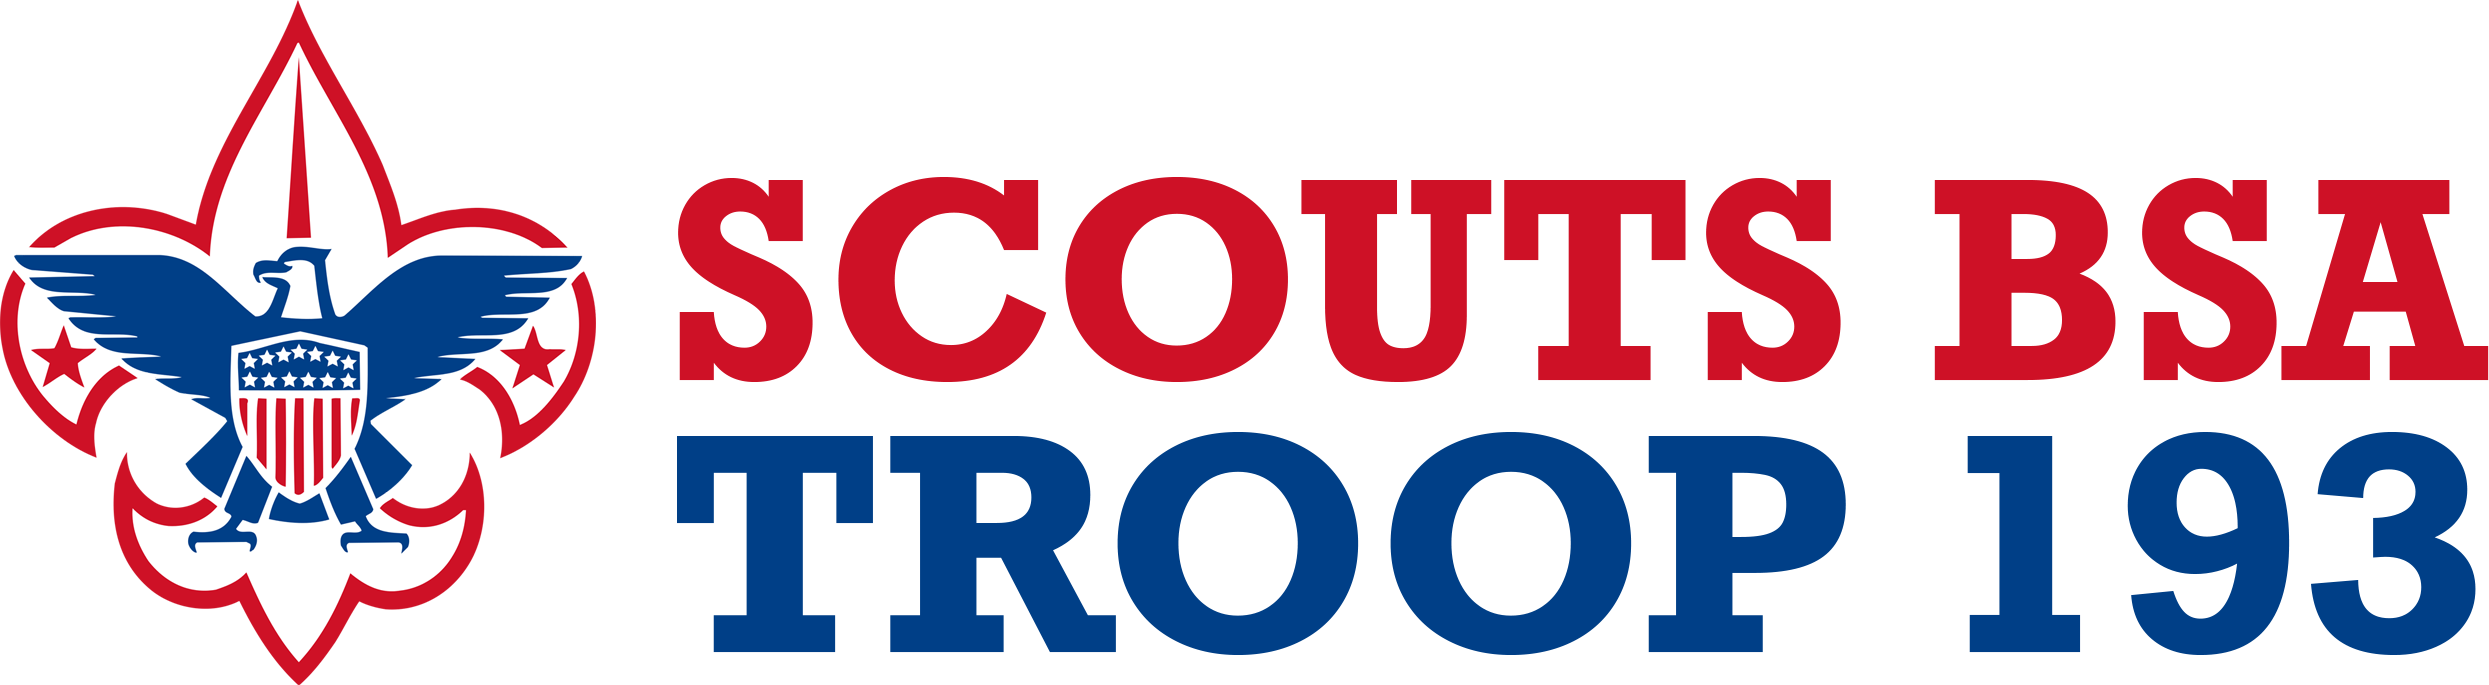 Scouts BSA Troop 193 – Hoover Alabama